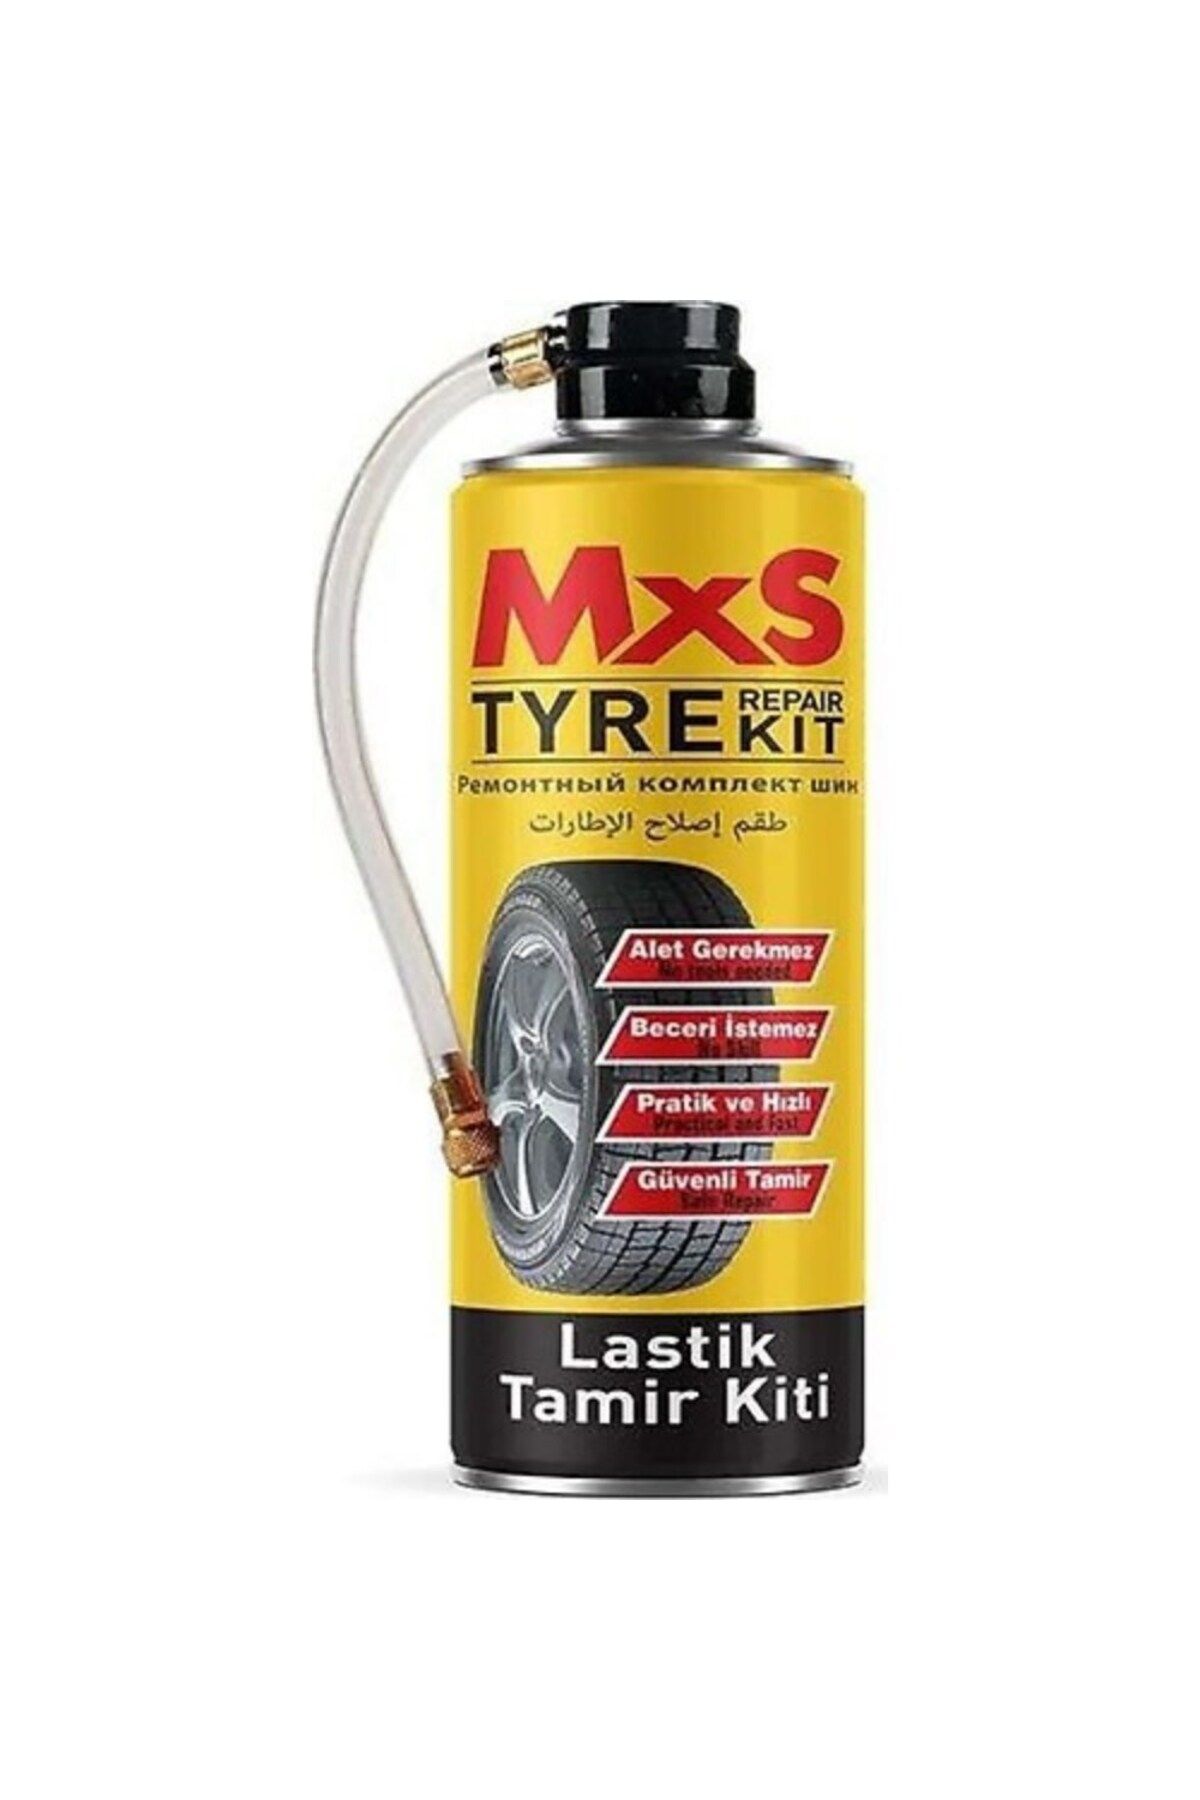 MxS Tyre Repair Kit - Lastik Tamir Kit